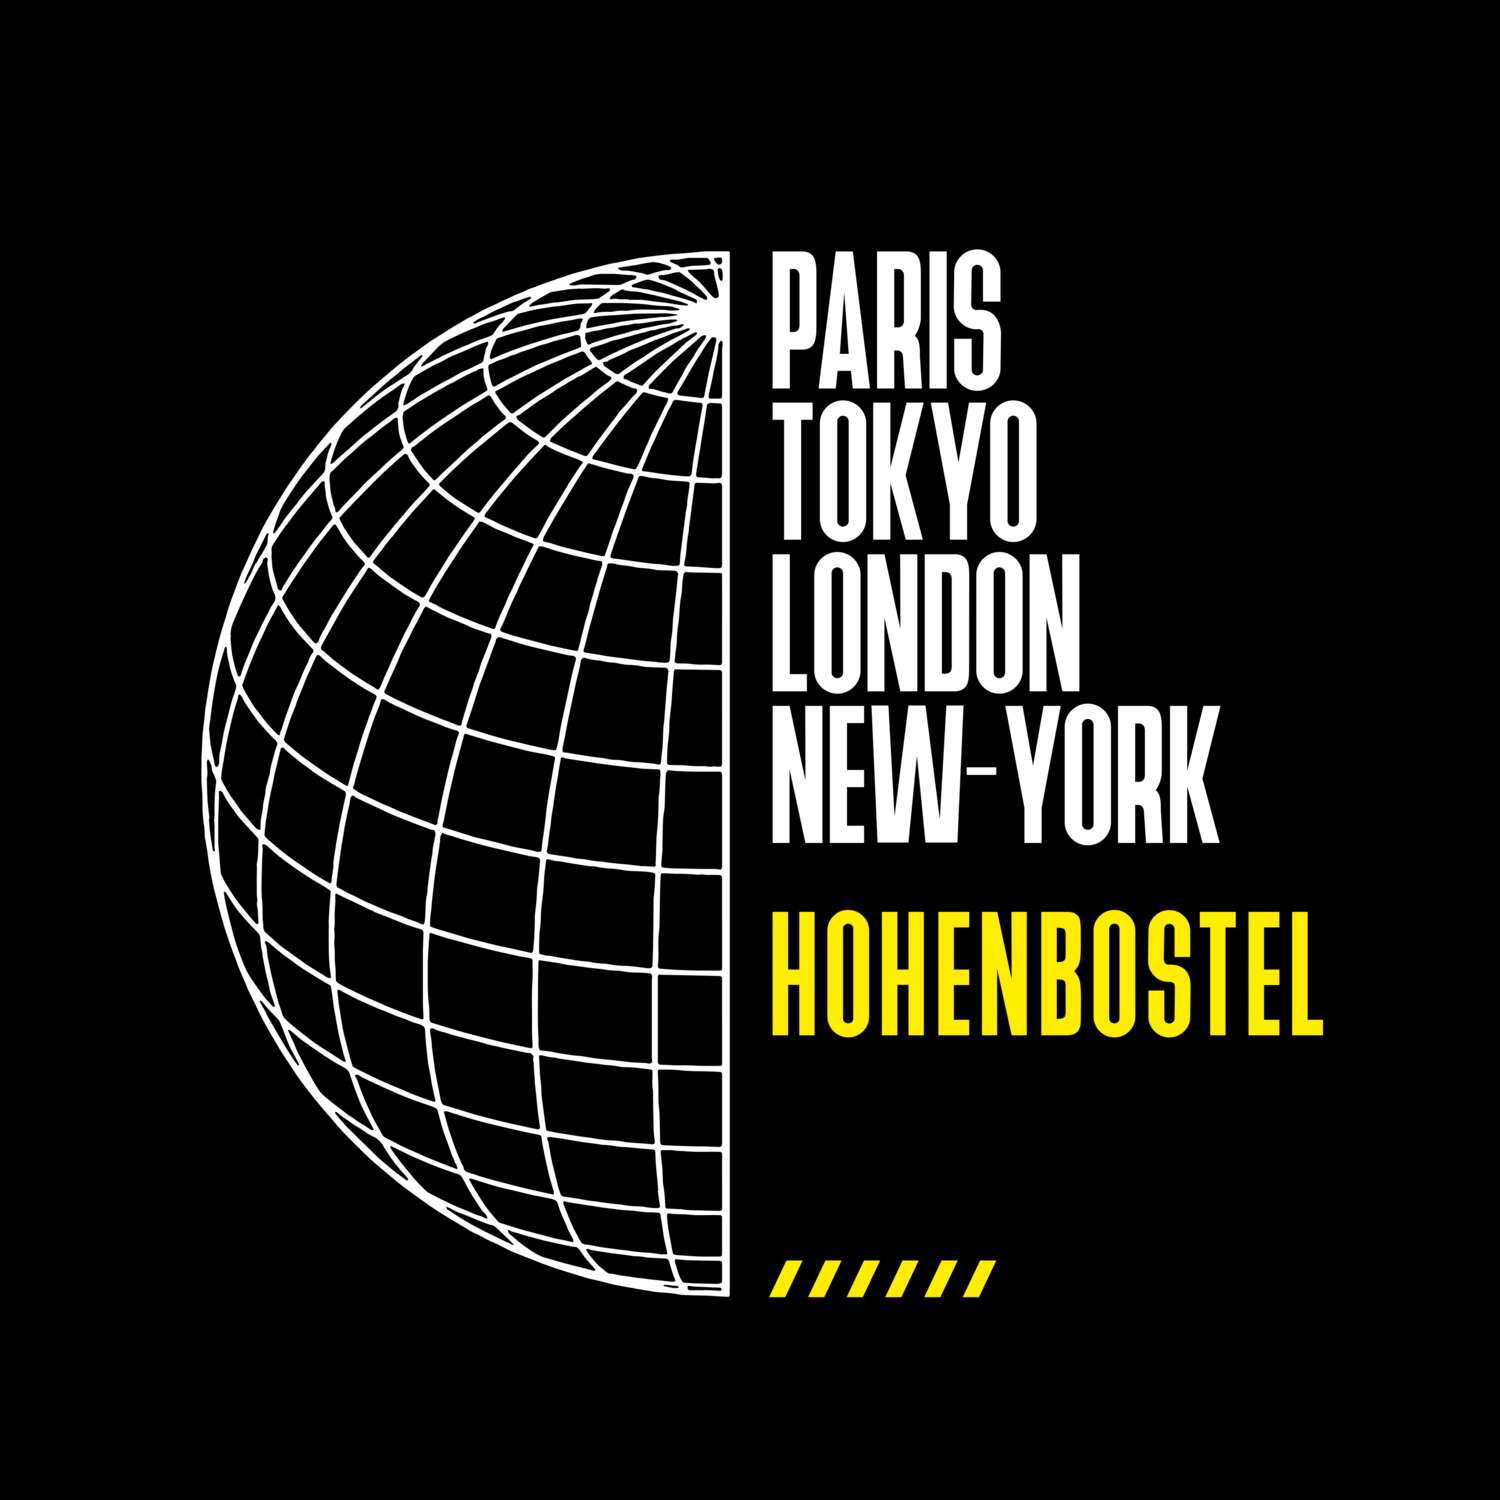 Hohenbostel T-Shirt »Paris Tokyo London«